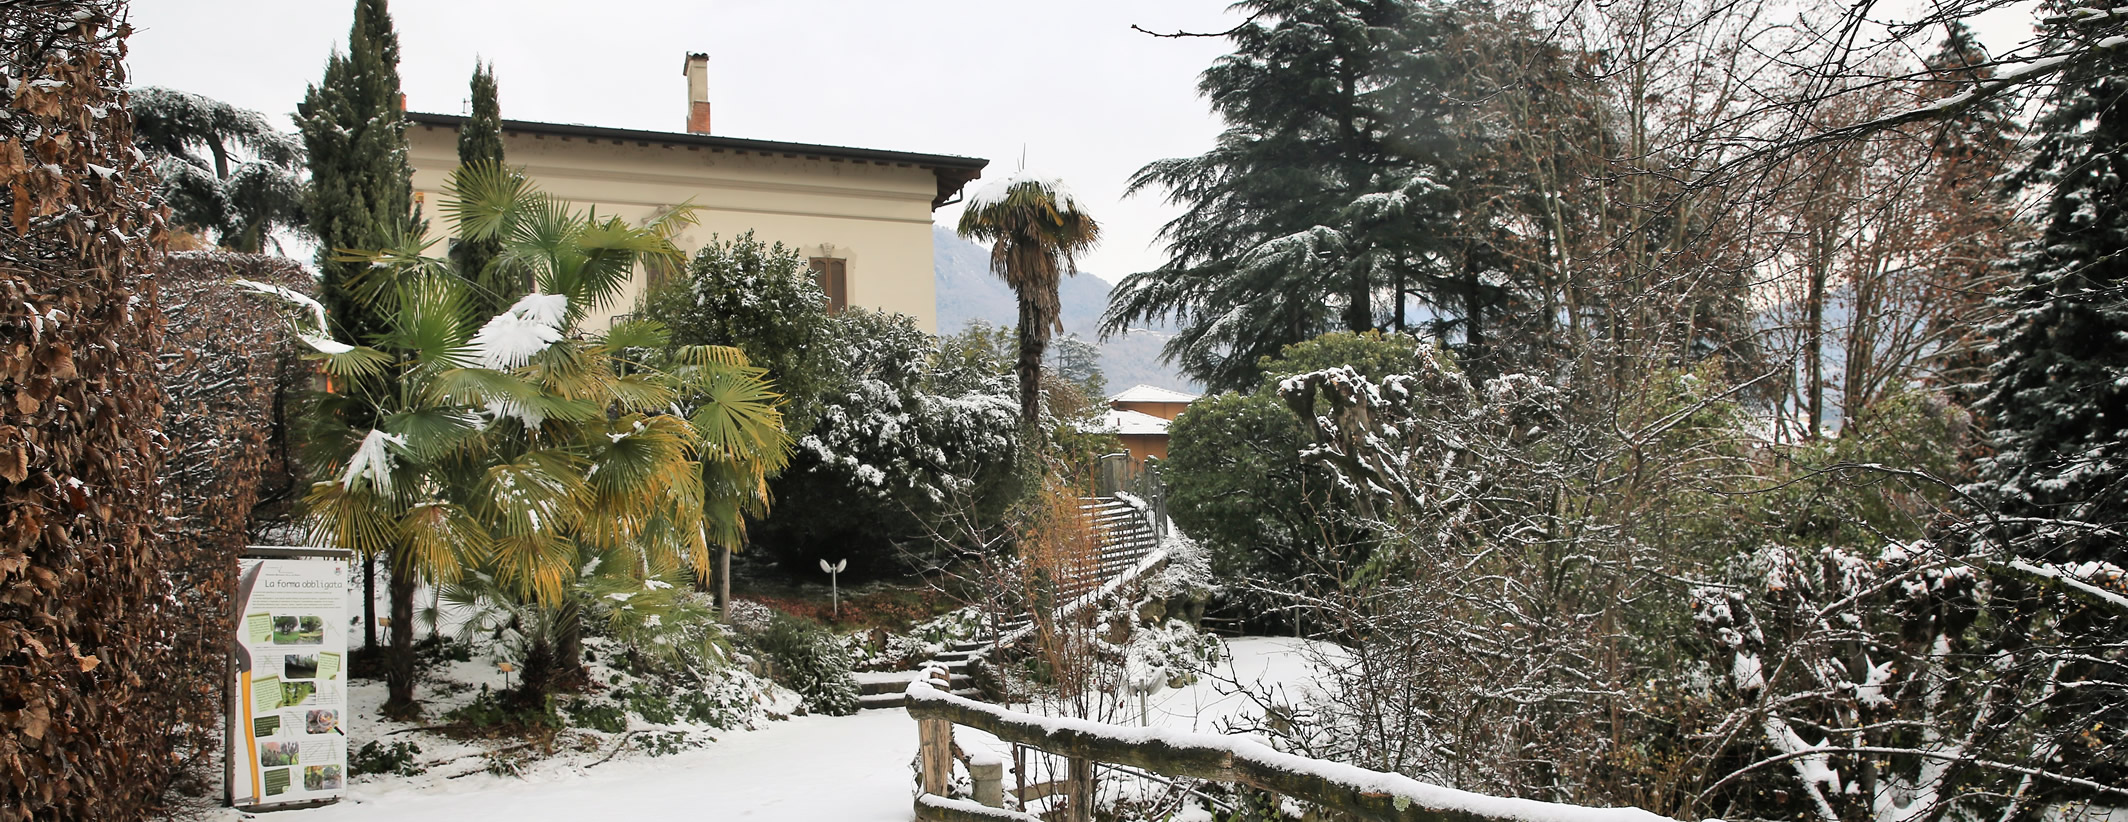 Villa e Giardino Botanico De Ponti a Calolziocorte - foto Danilo Butta